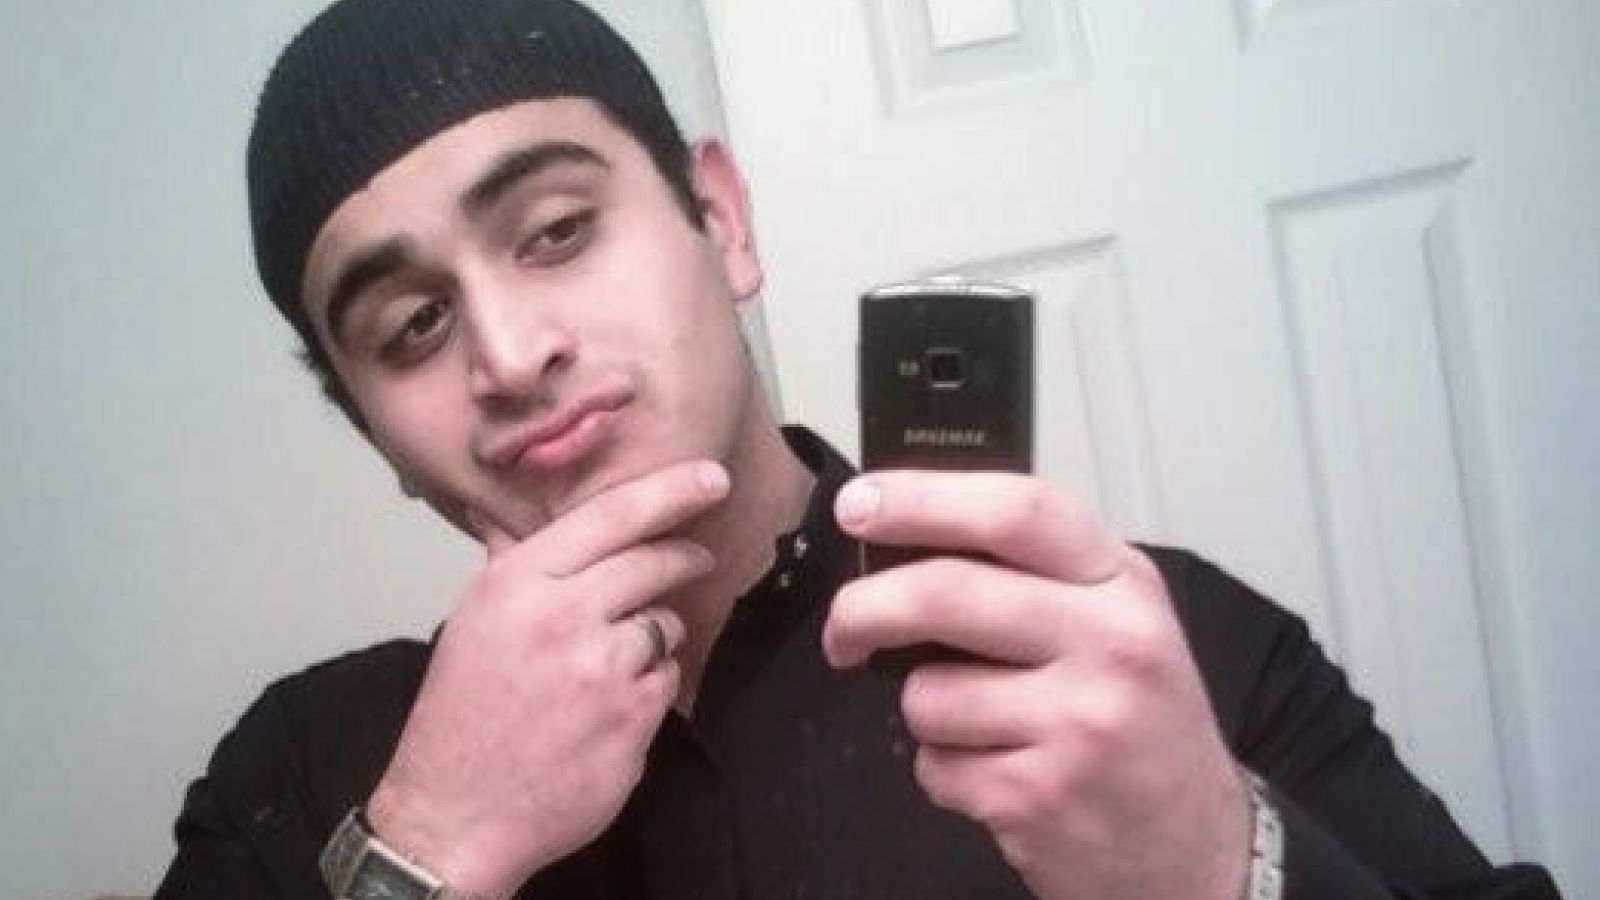 Assassino Omar Mateen frequentava boate gay onde cometeu atentado